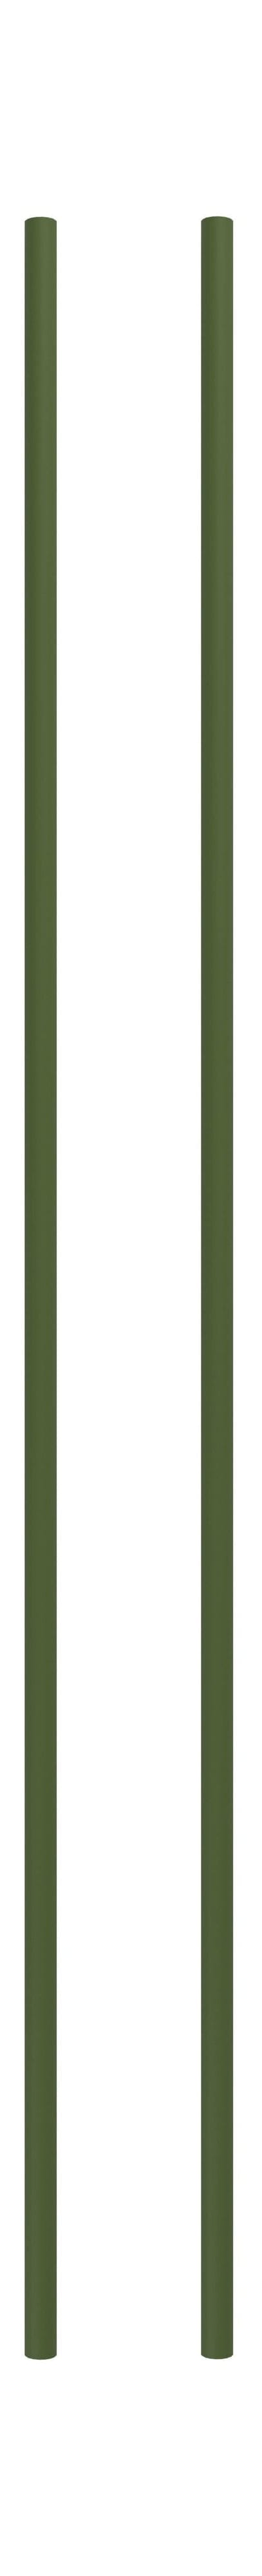 Moebe Spling -systeem/muurrekken been 115 cm dennengroen, set van 2